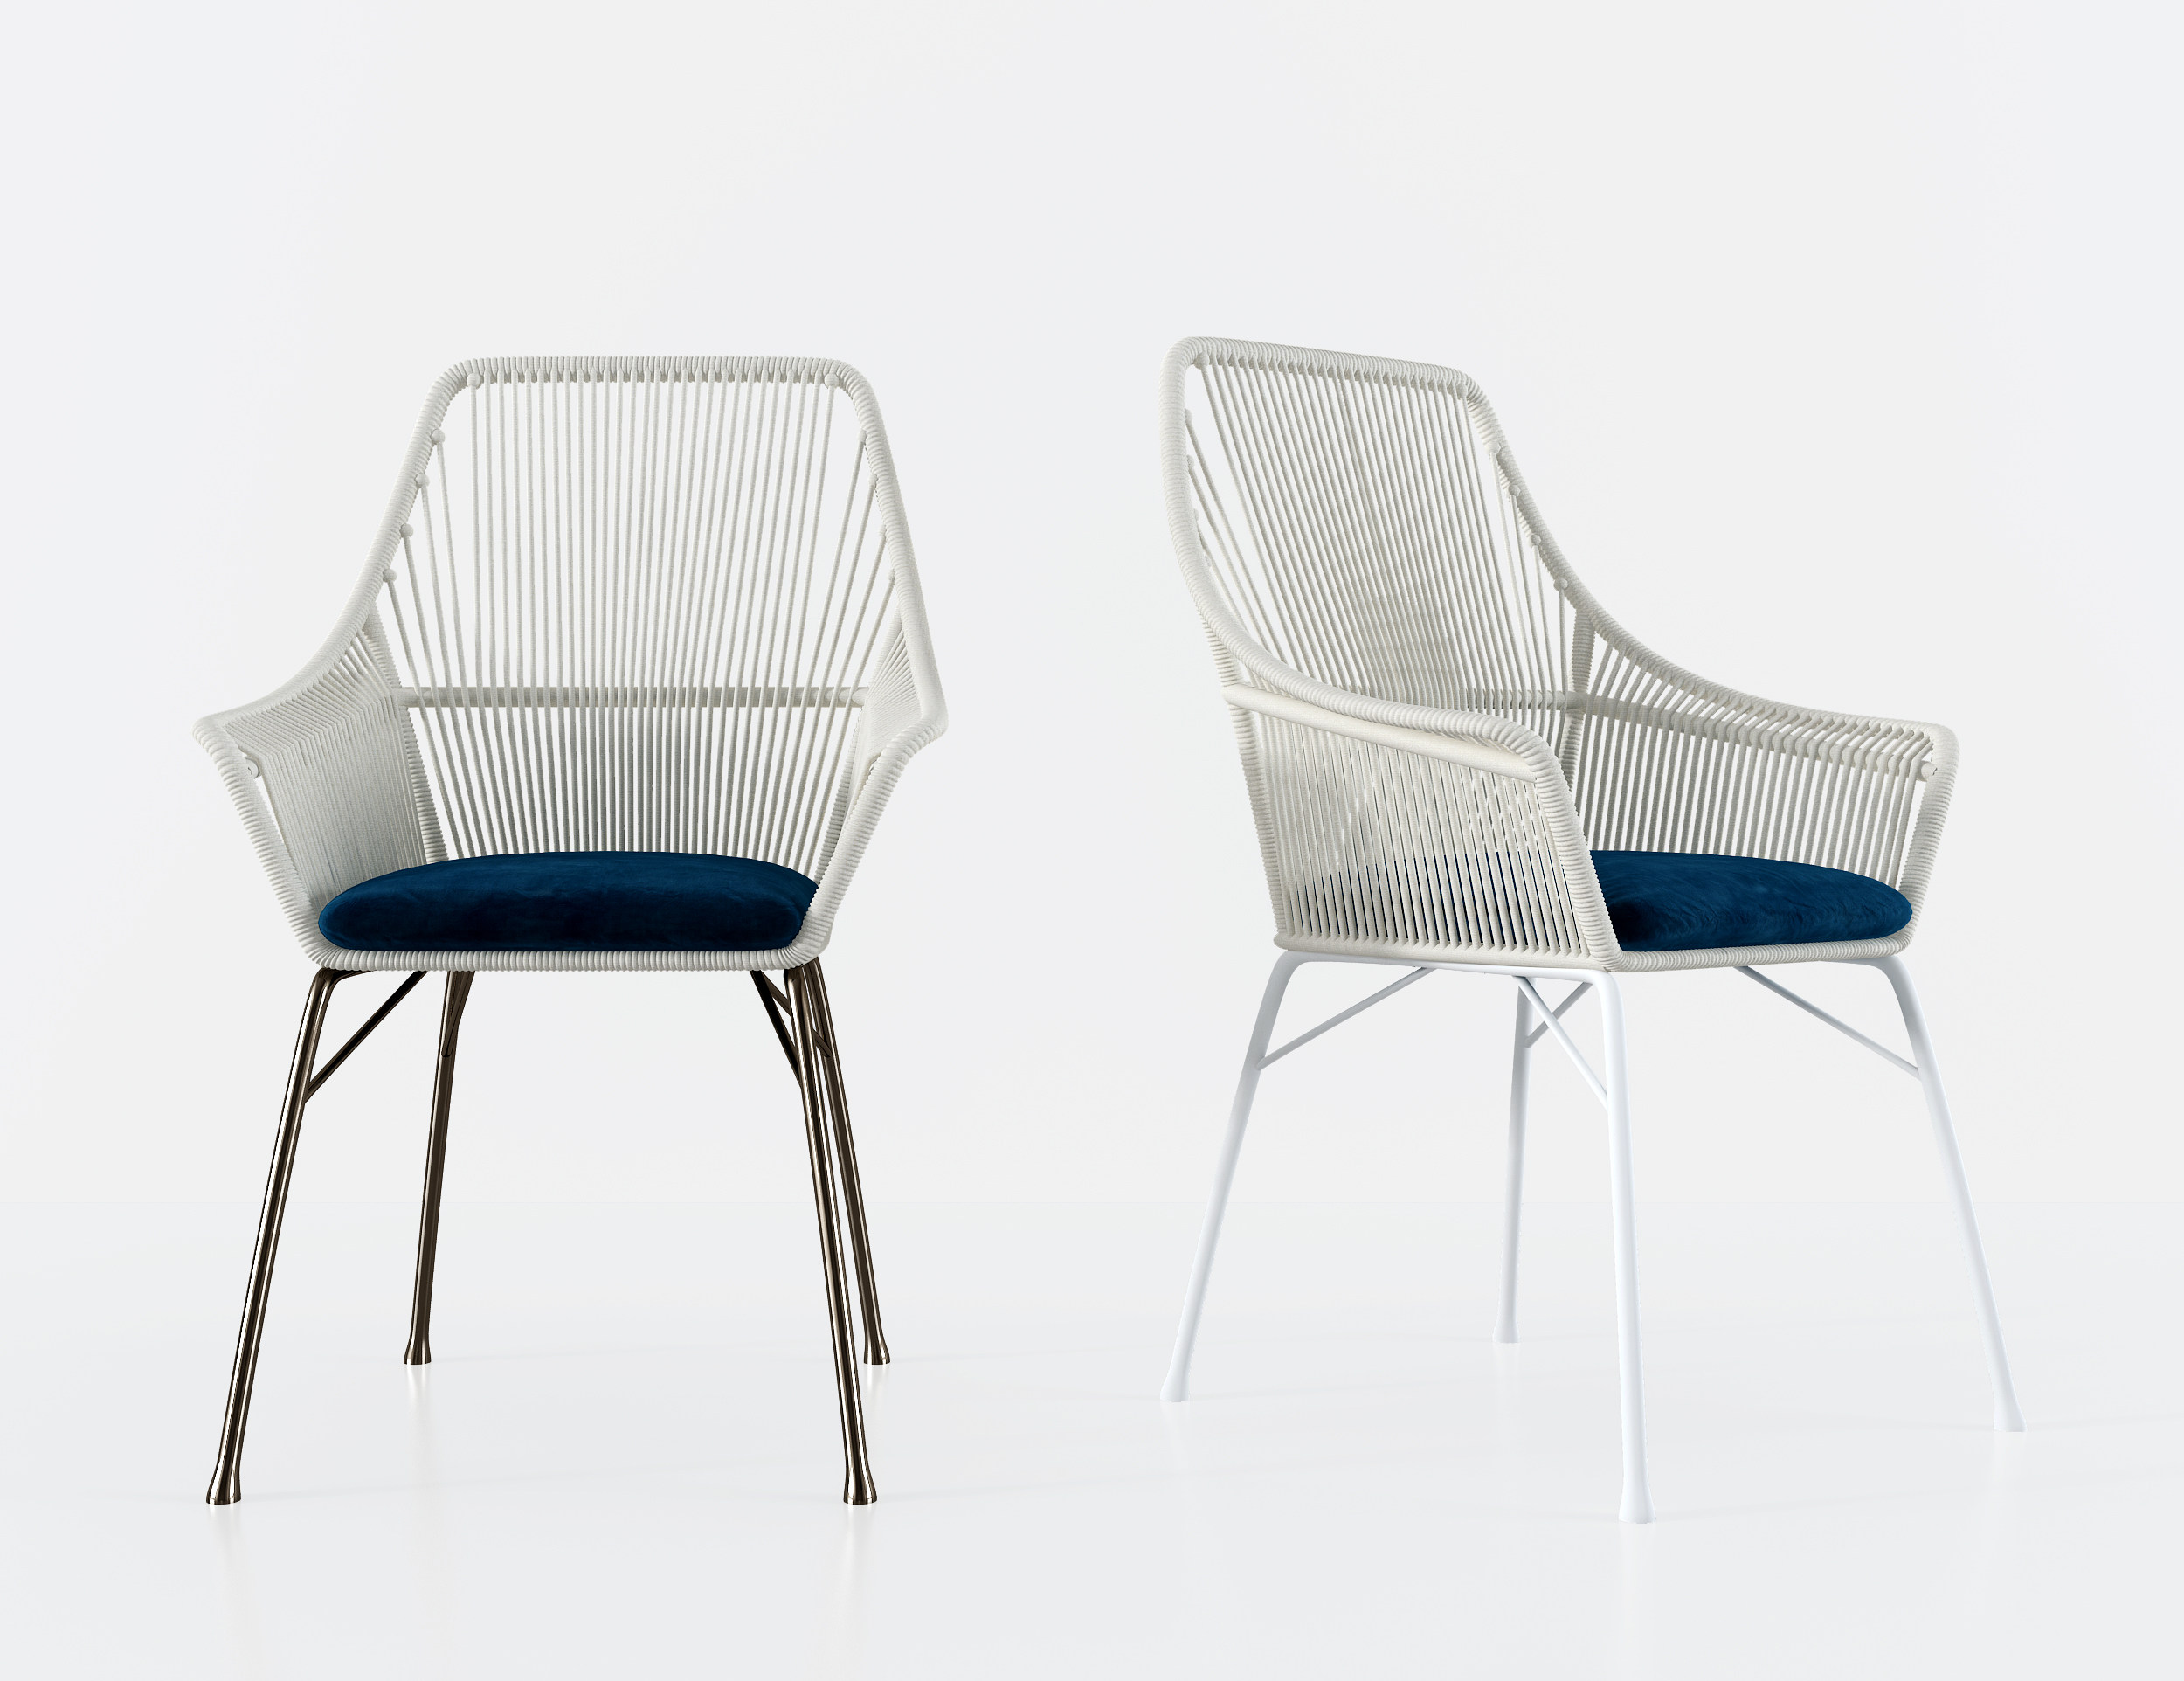 意大利 米洛提 Minotti 现代休闲椅户外椅,椅子,休闲椅,单椅 (2)3d模型下载